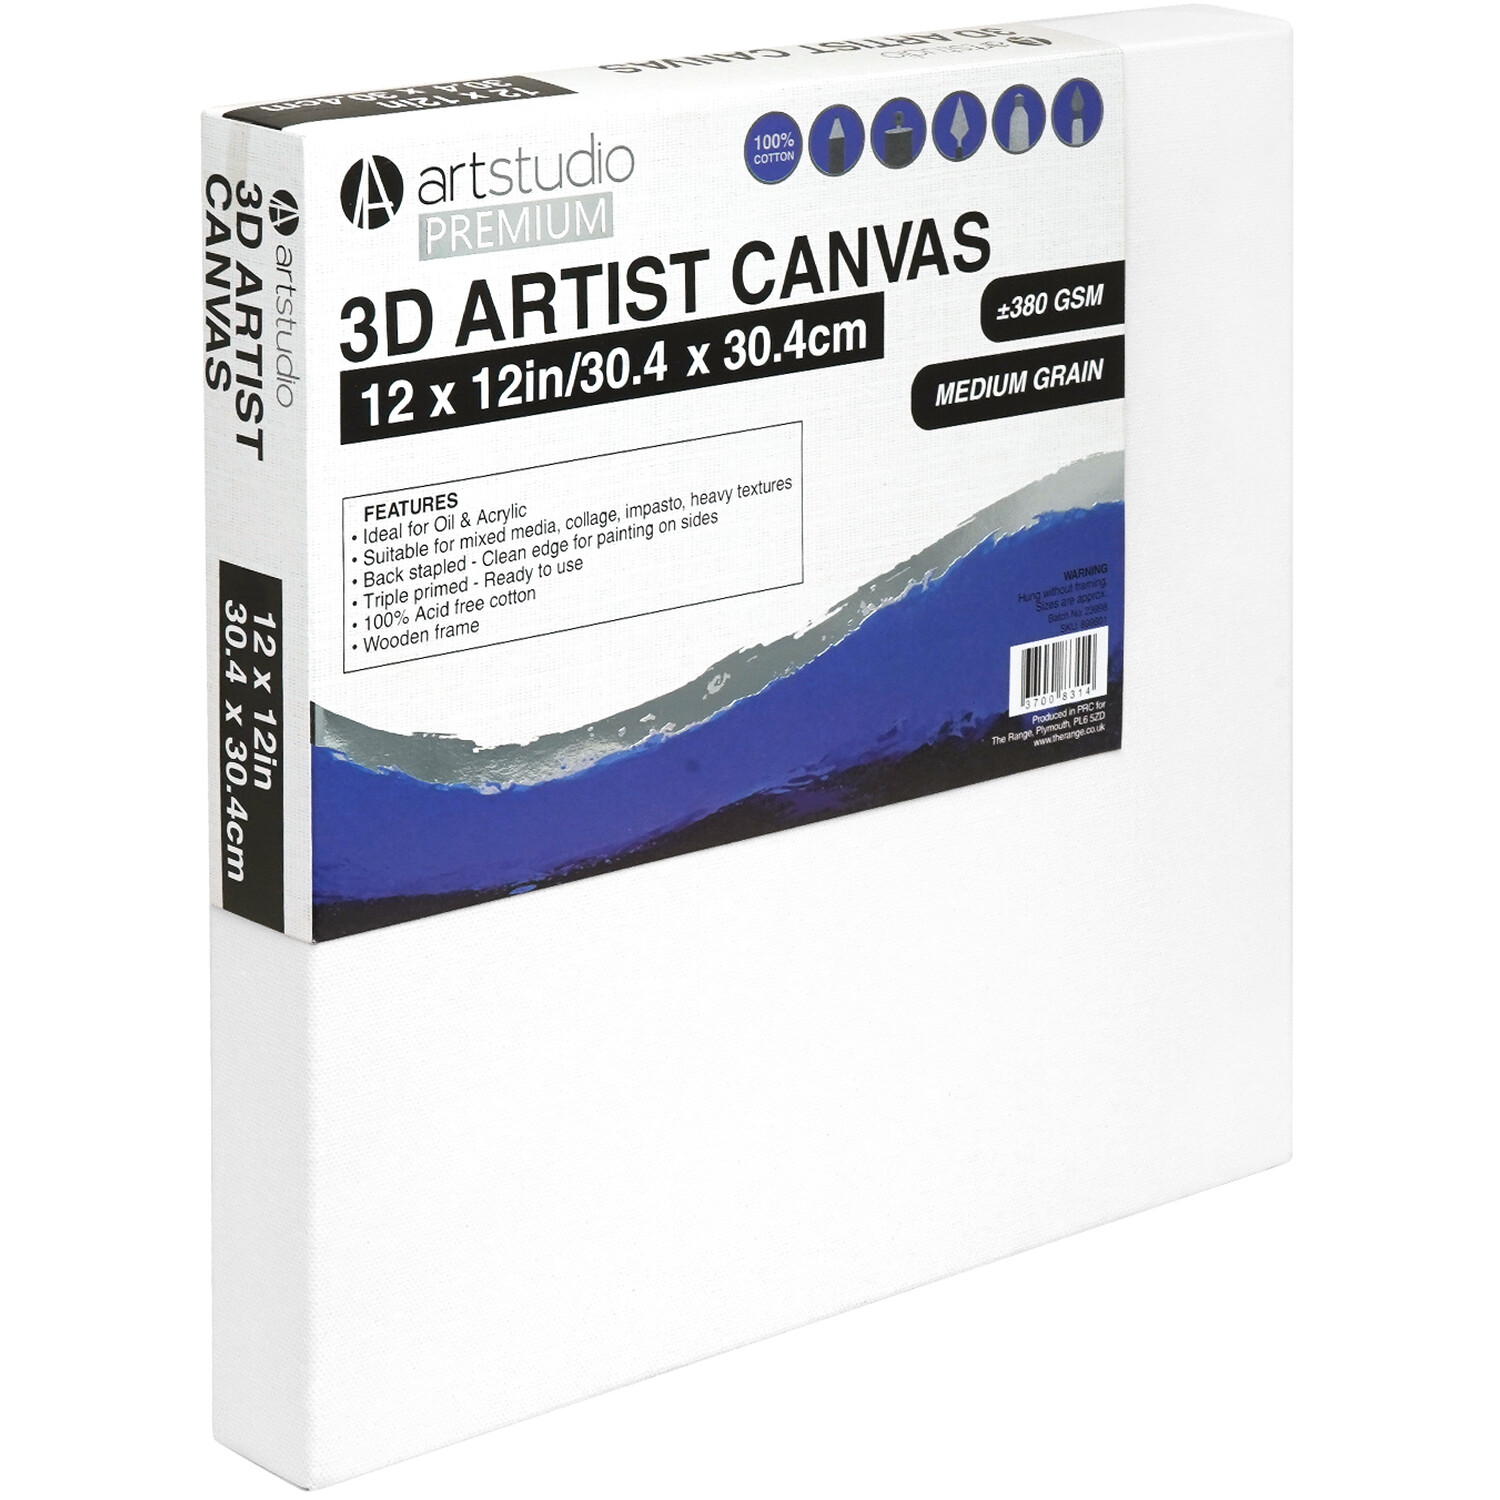 Art Studio Premium 3D Artist Canvas 30.4 x 30.4cm Image 2